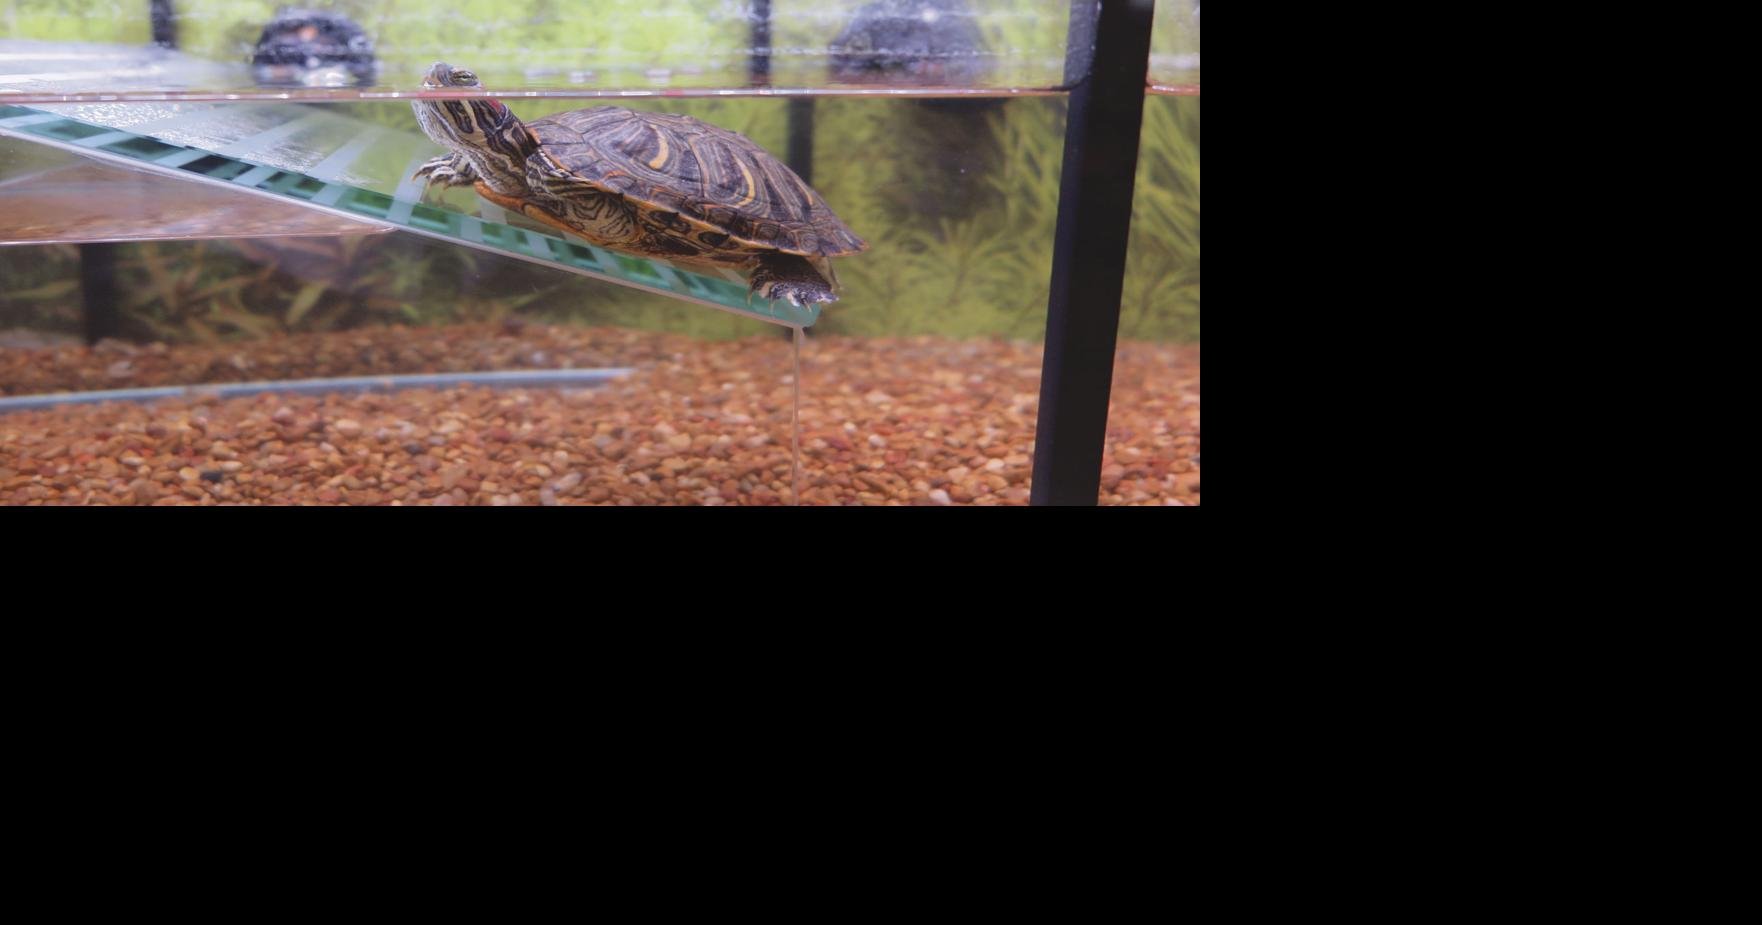 petsmart turtle